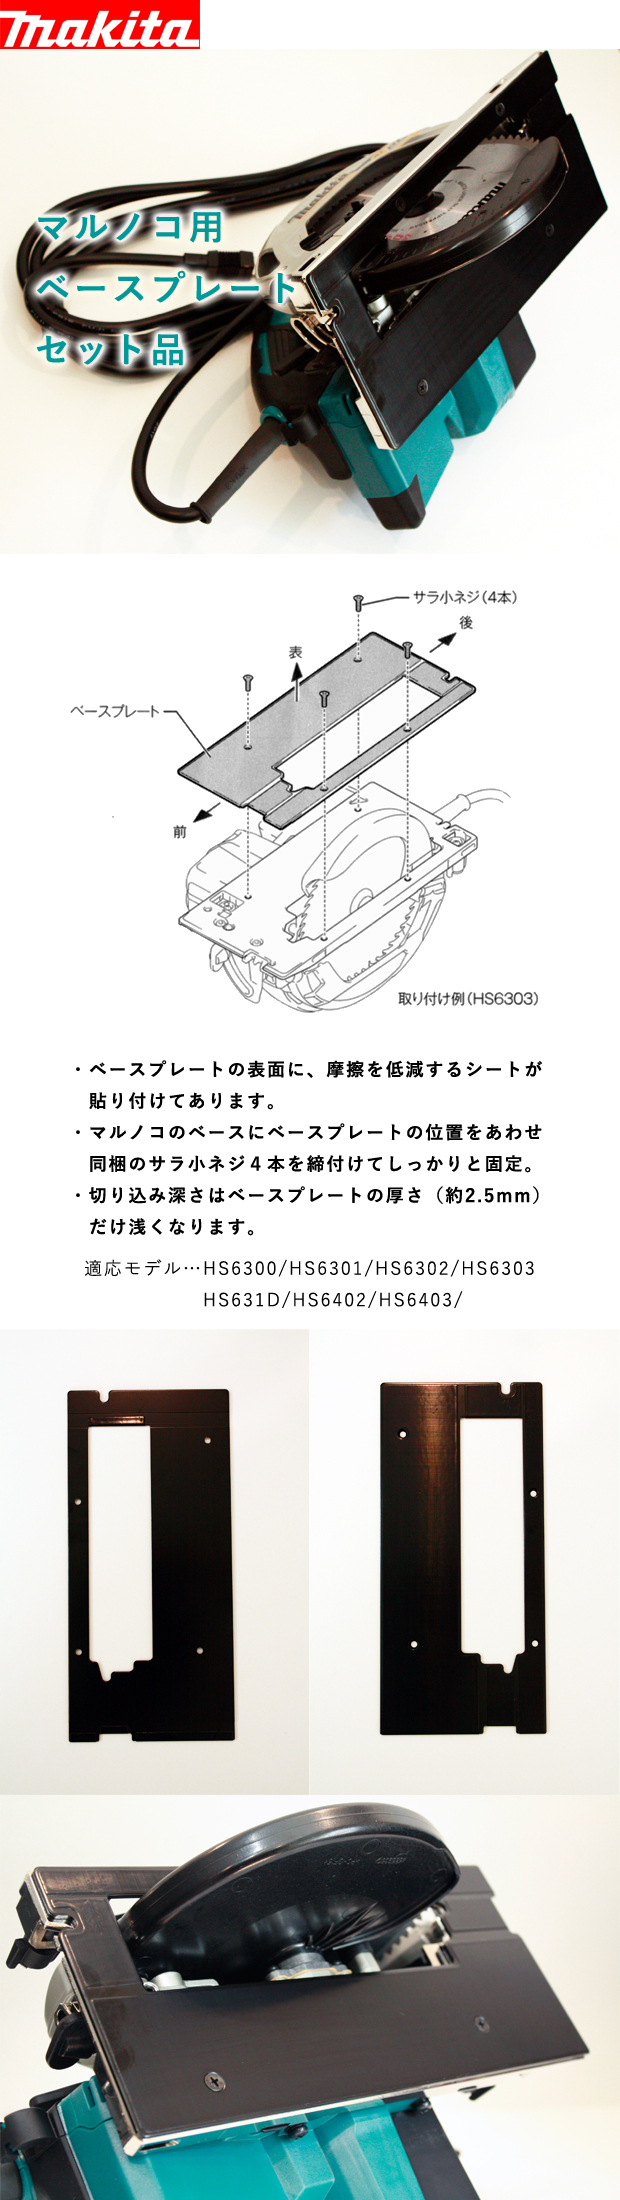 良好品】 マキタ ベースプレートセット品 A-66101 makita